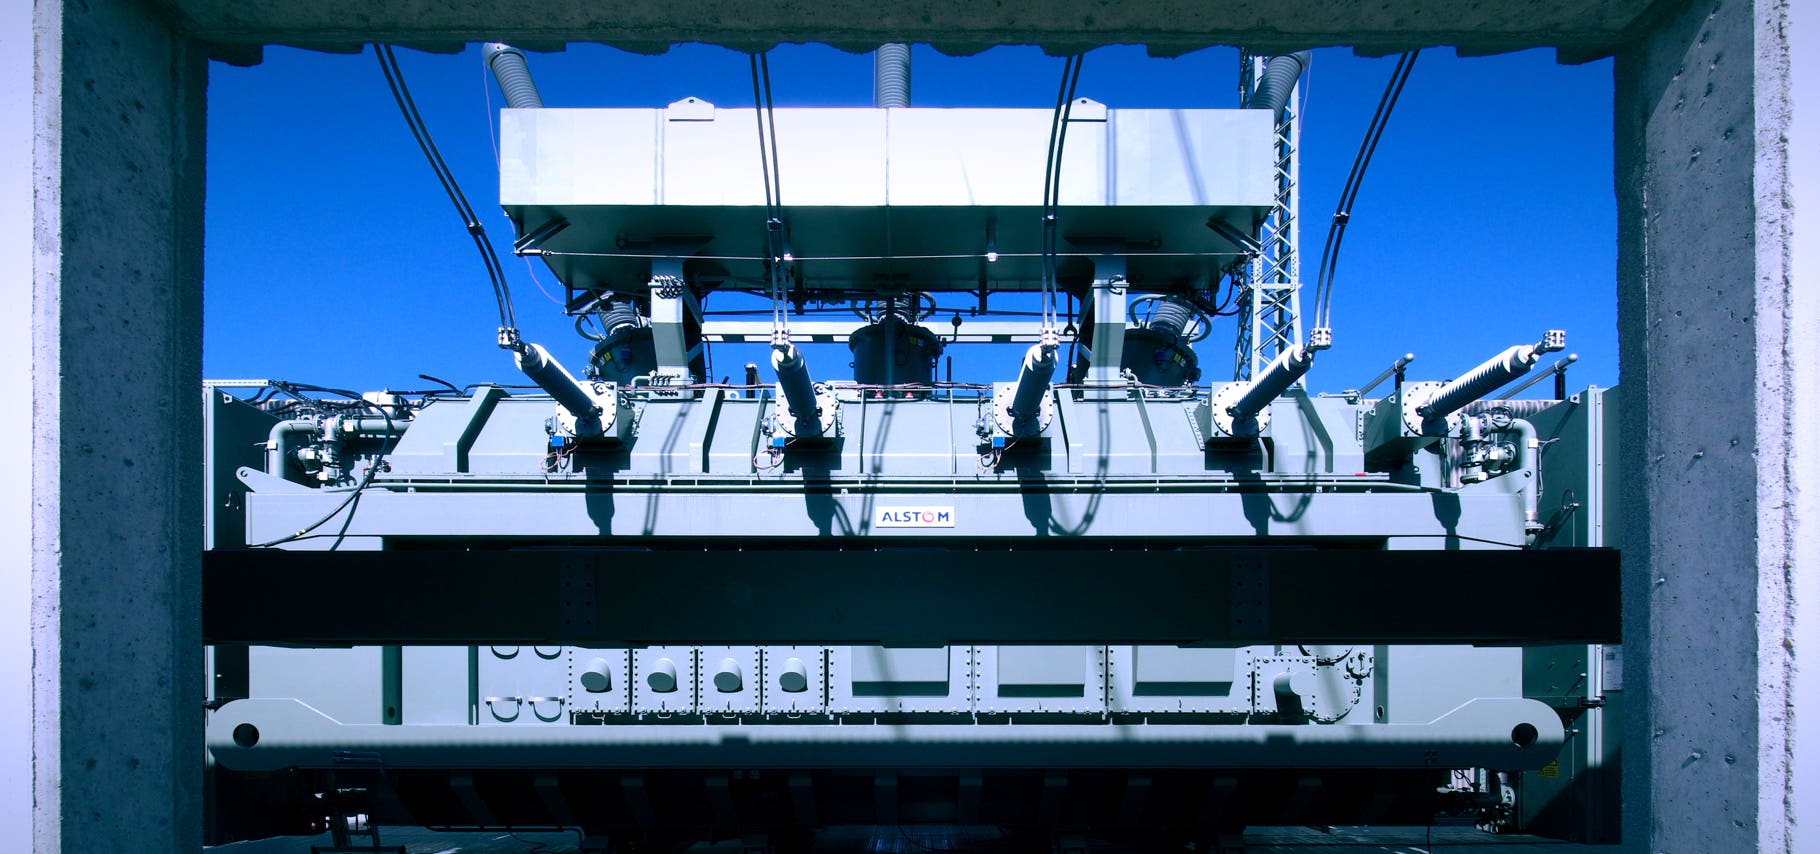 Foto großer Siemens Oel-Transformator in Umspannwerk, Blick durch Beton-Zarge, blauer Himmel